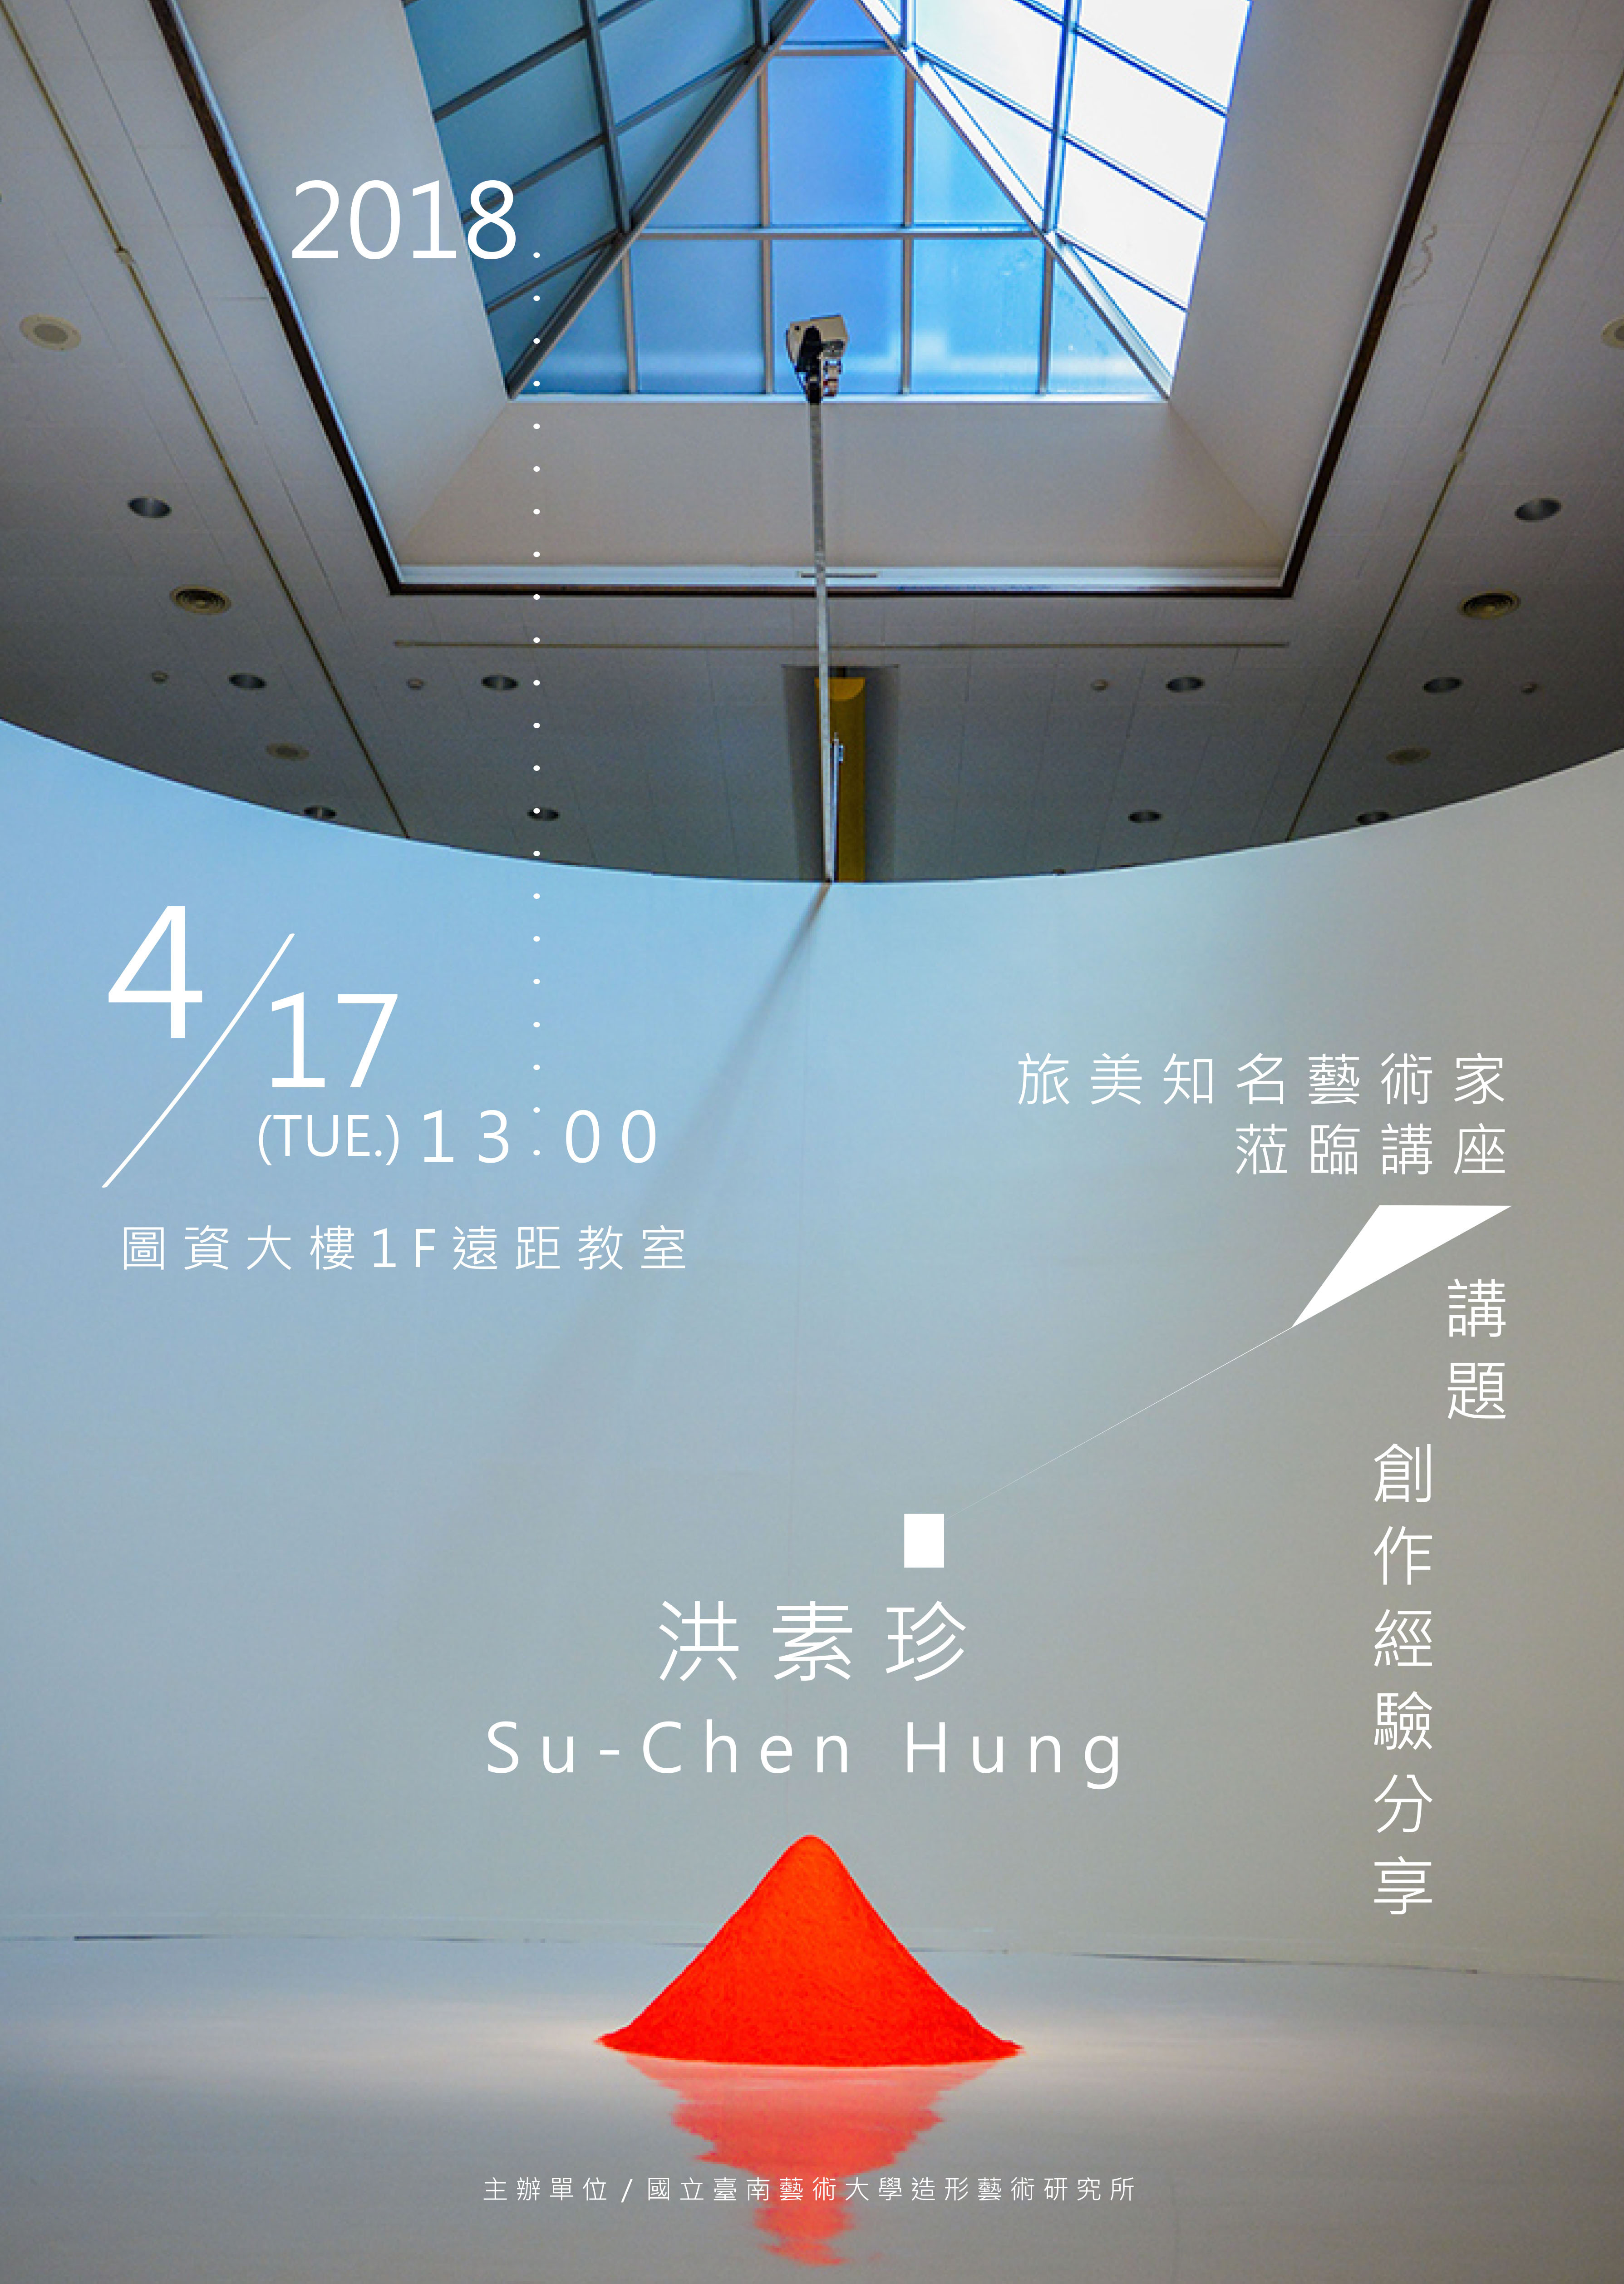 2018/4/17(二)13:00洪素珍藝術家創作經驗分享講座，於圖資大樓1樓遠距教室舉辦。